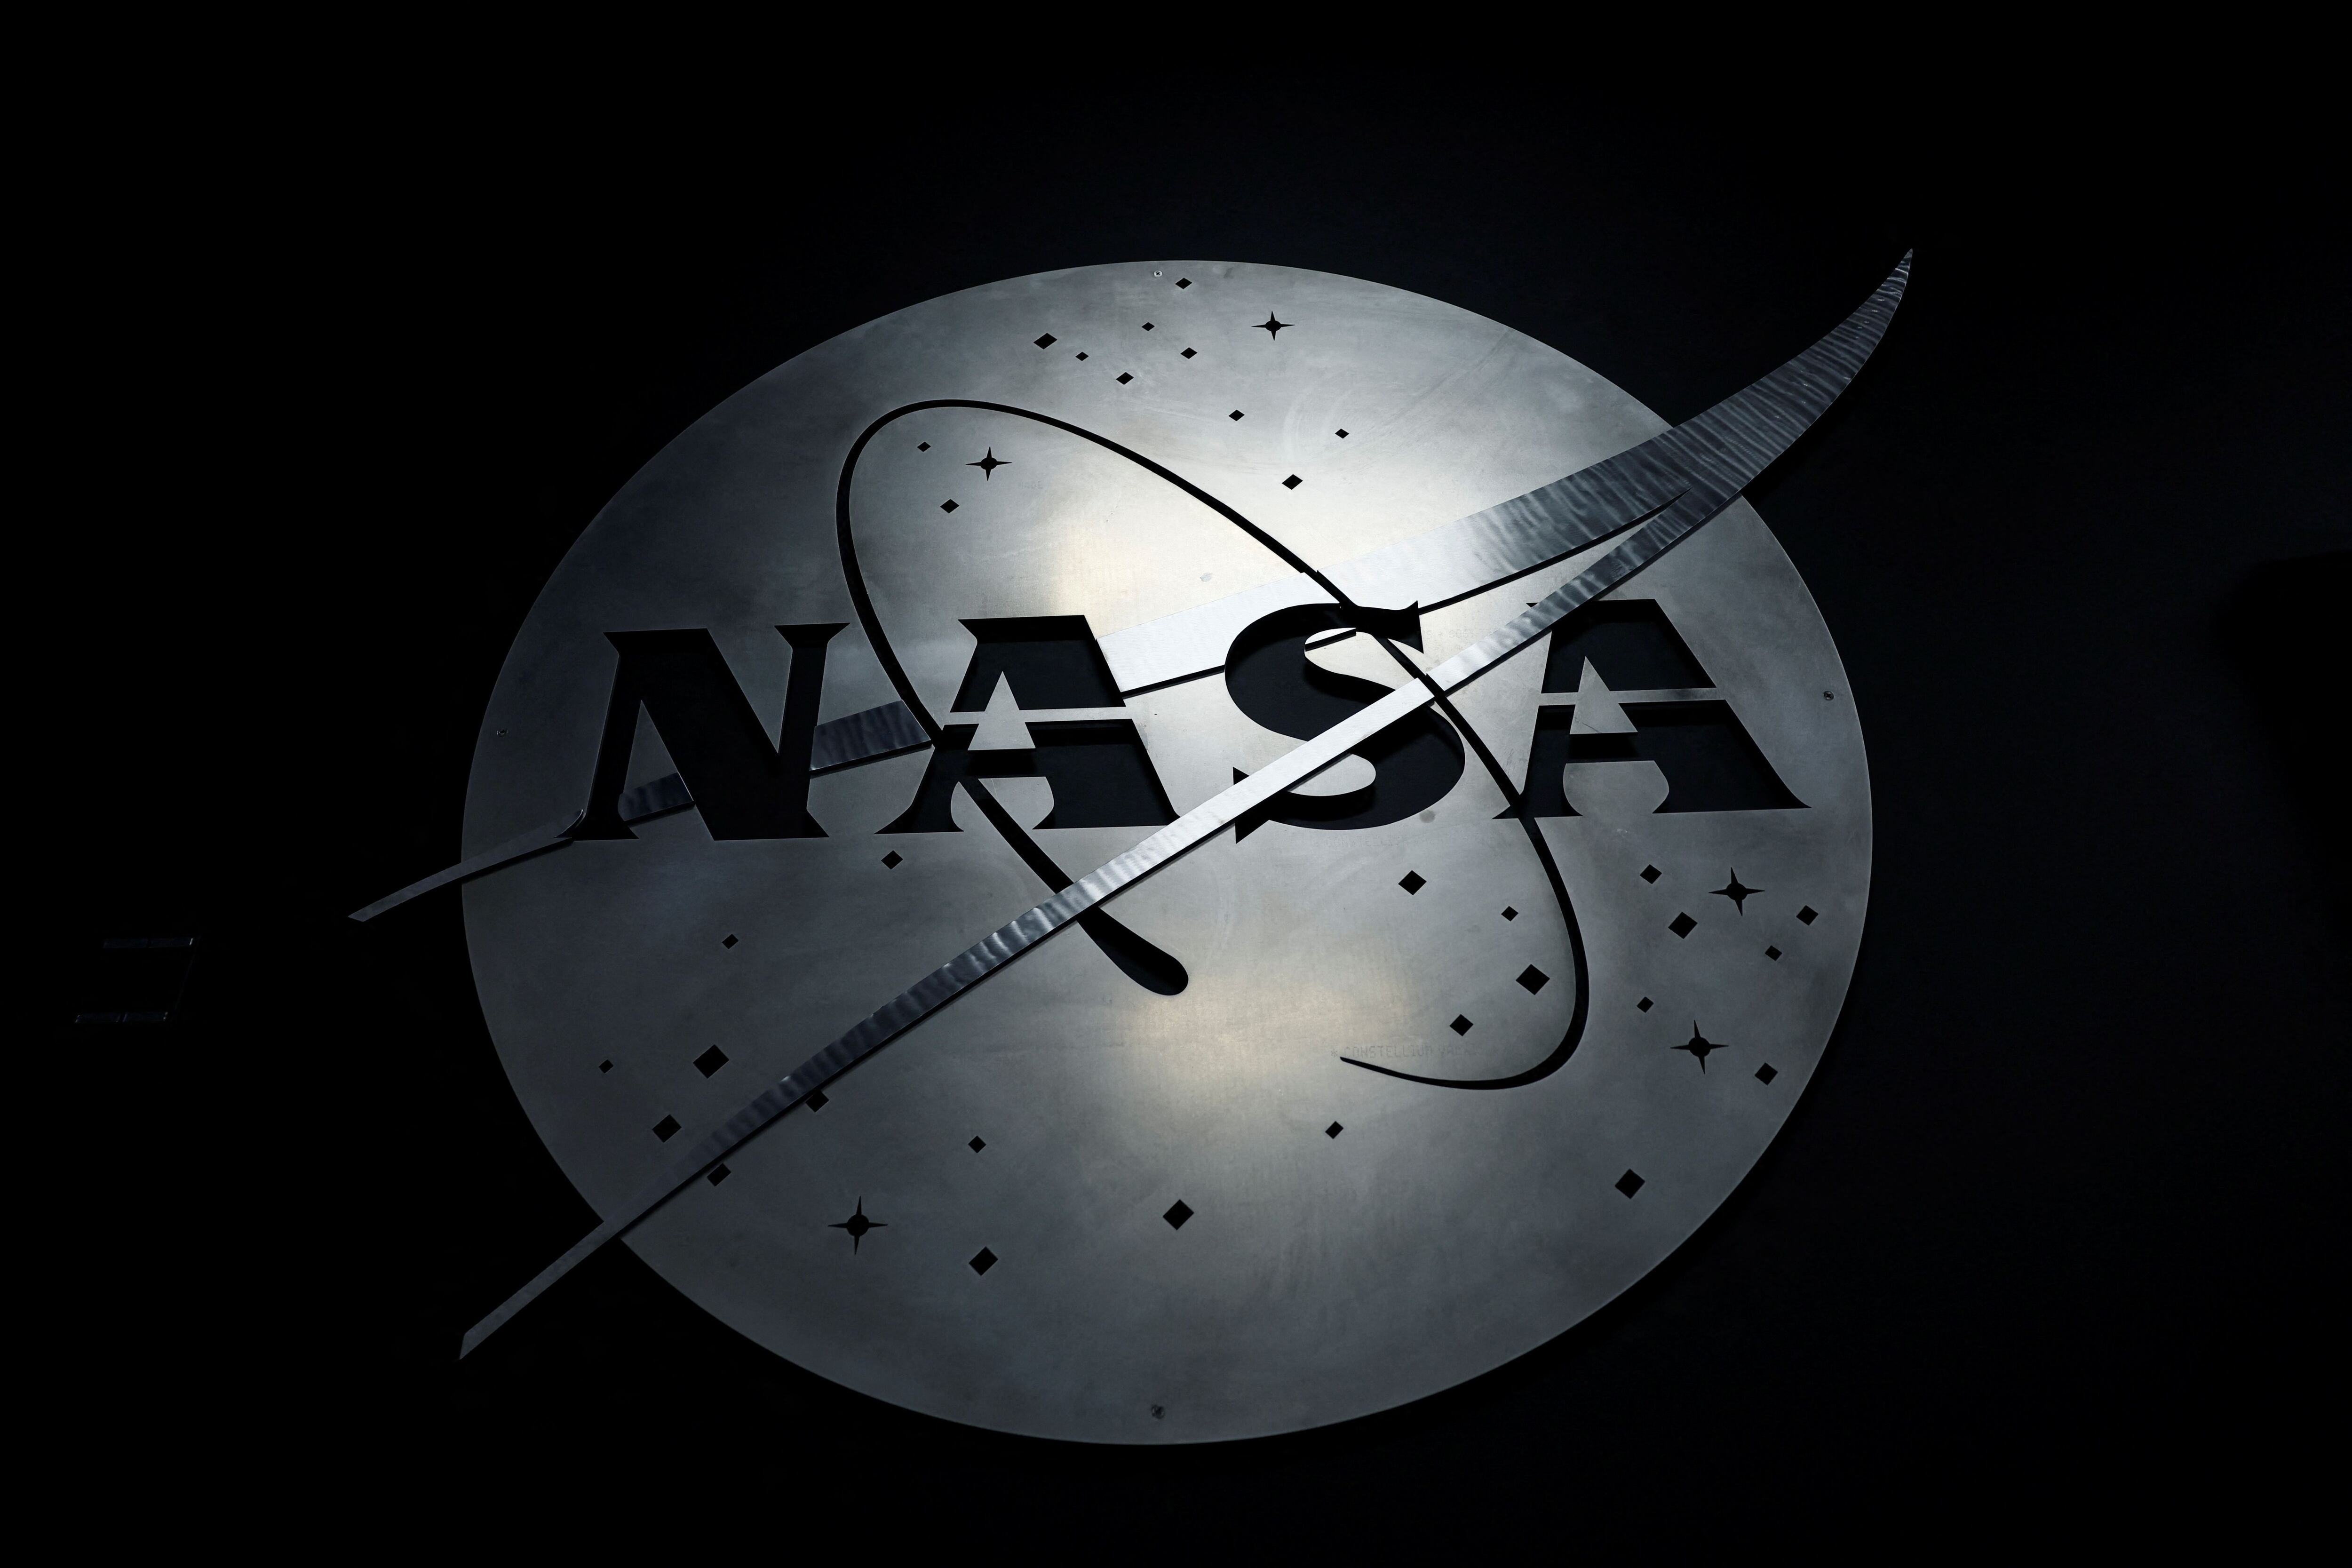 La NASA pone a disposición sus desarrollos para que empresas de otros sectores puedan sacarles provecho. (REUTERS)